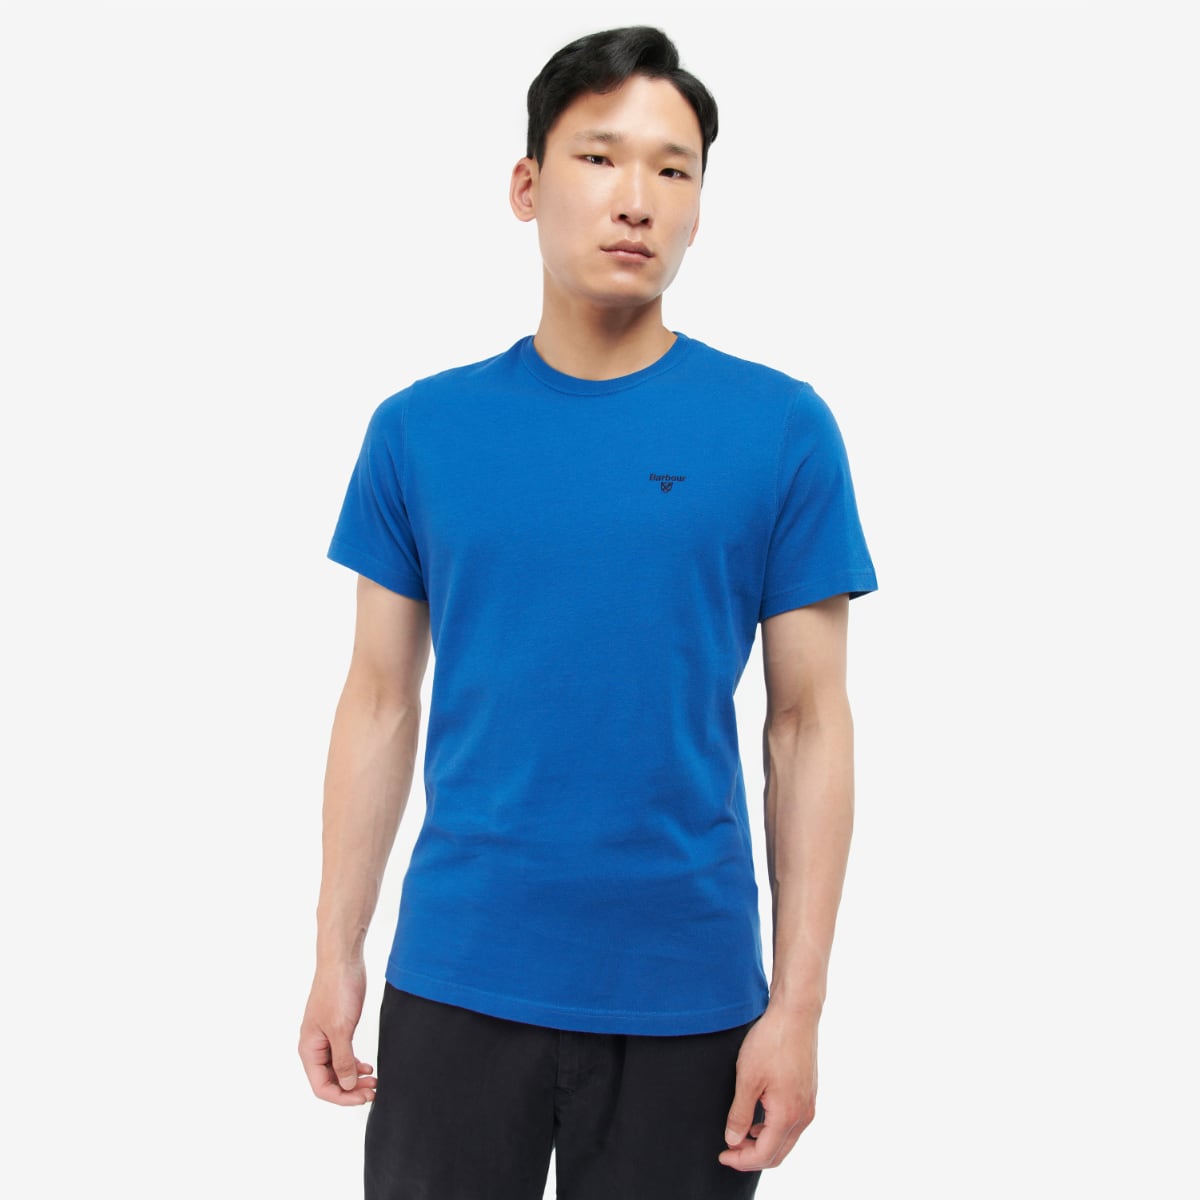 Barbour Men's Sports T-Shirt | Monaco Blue